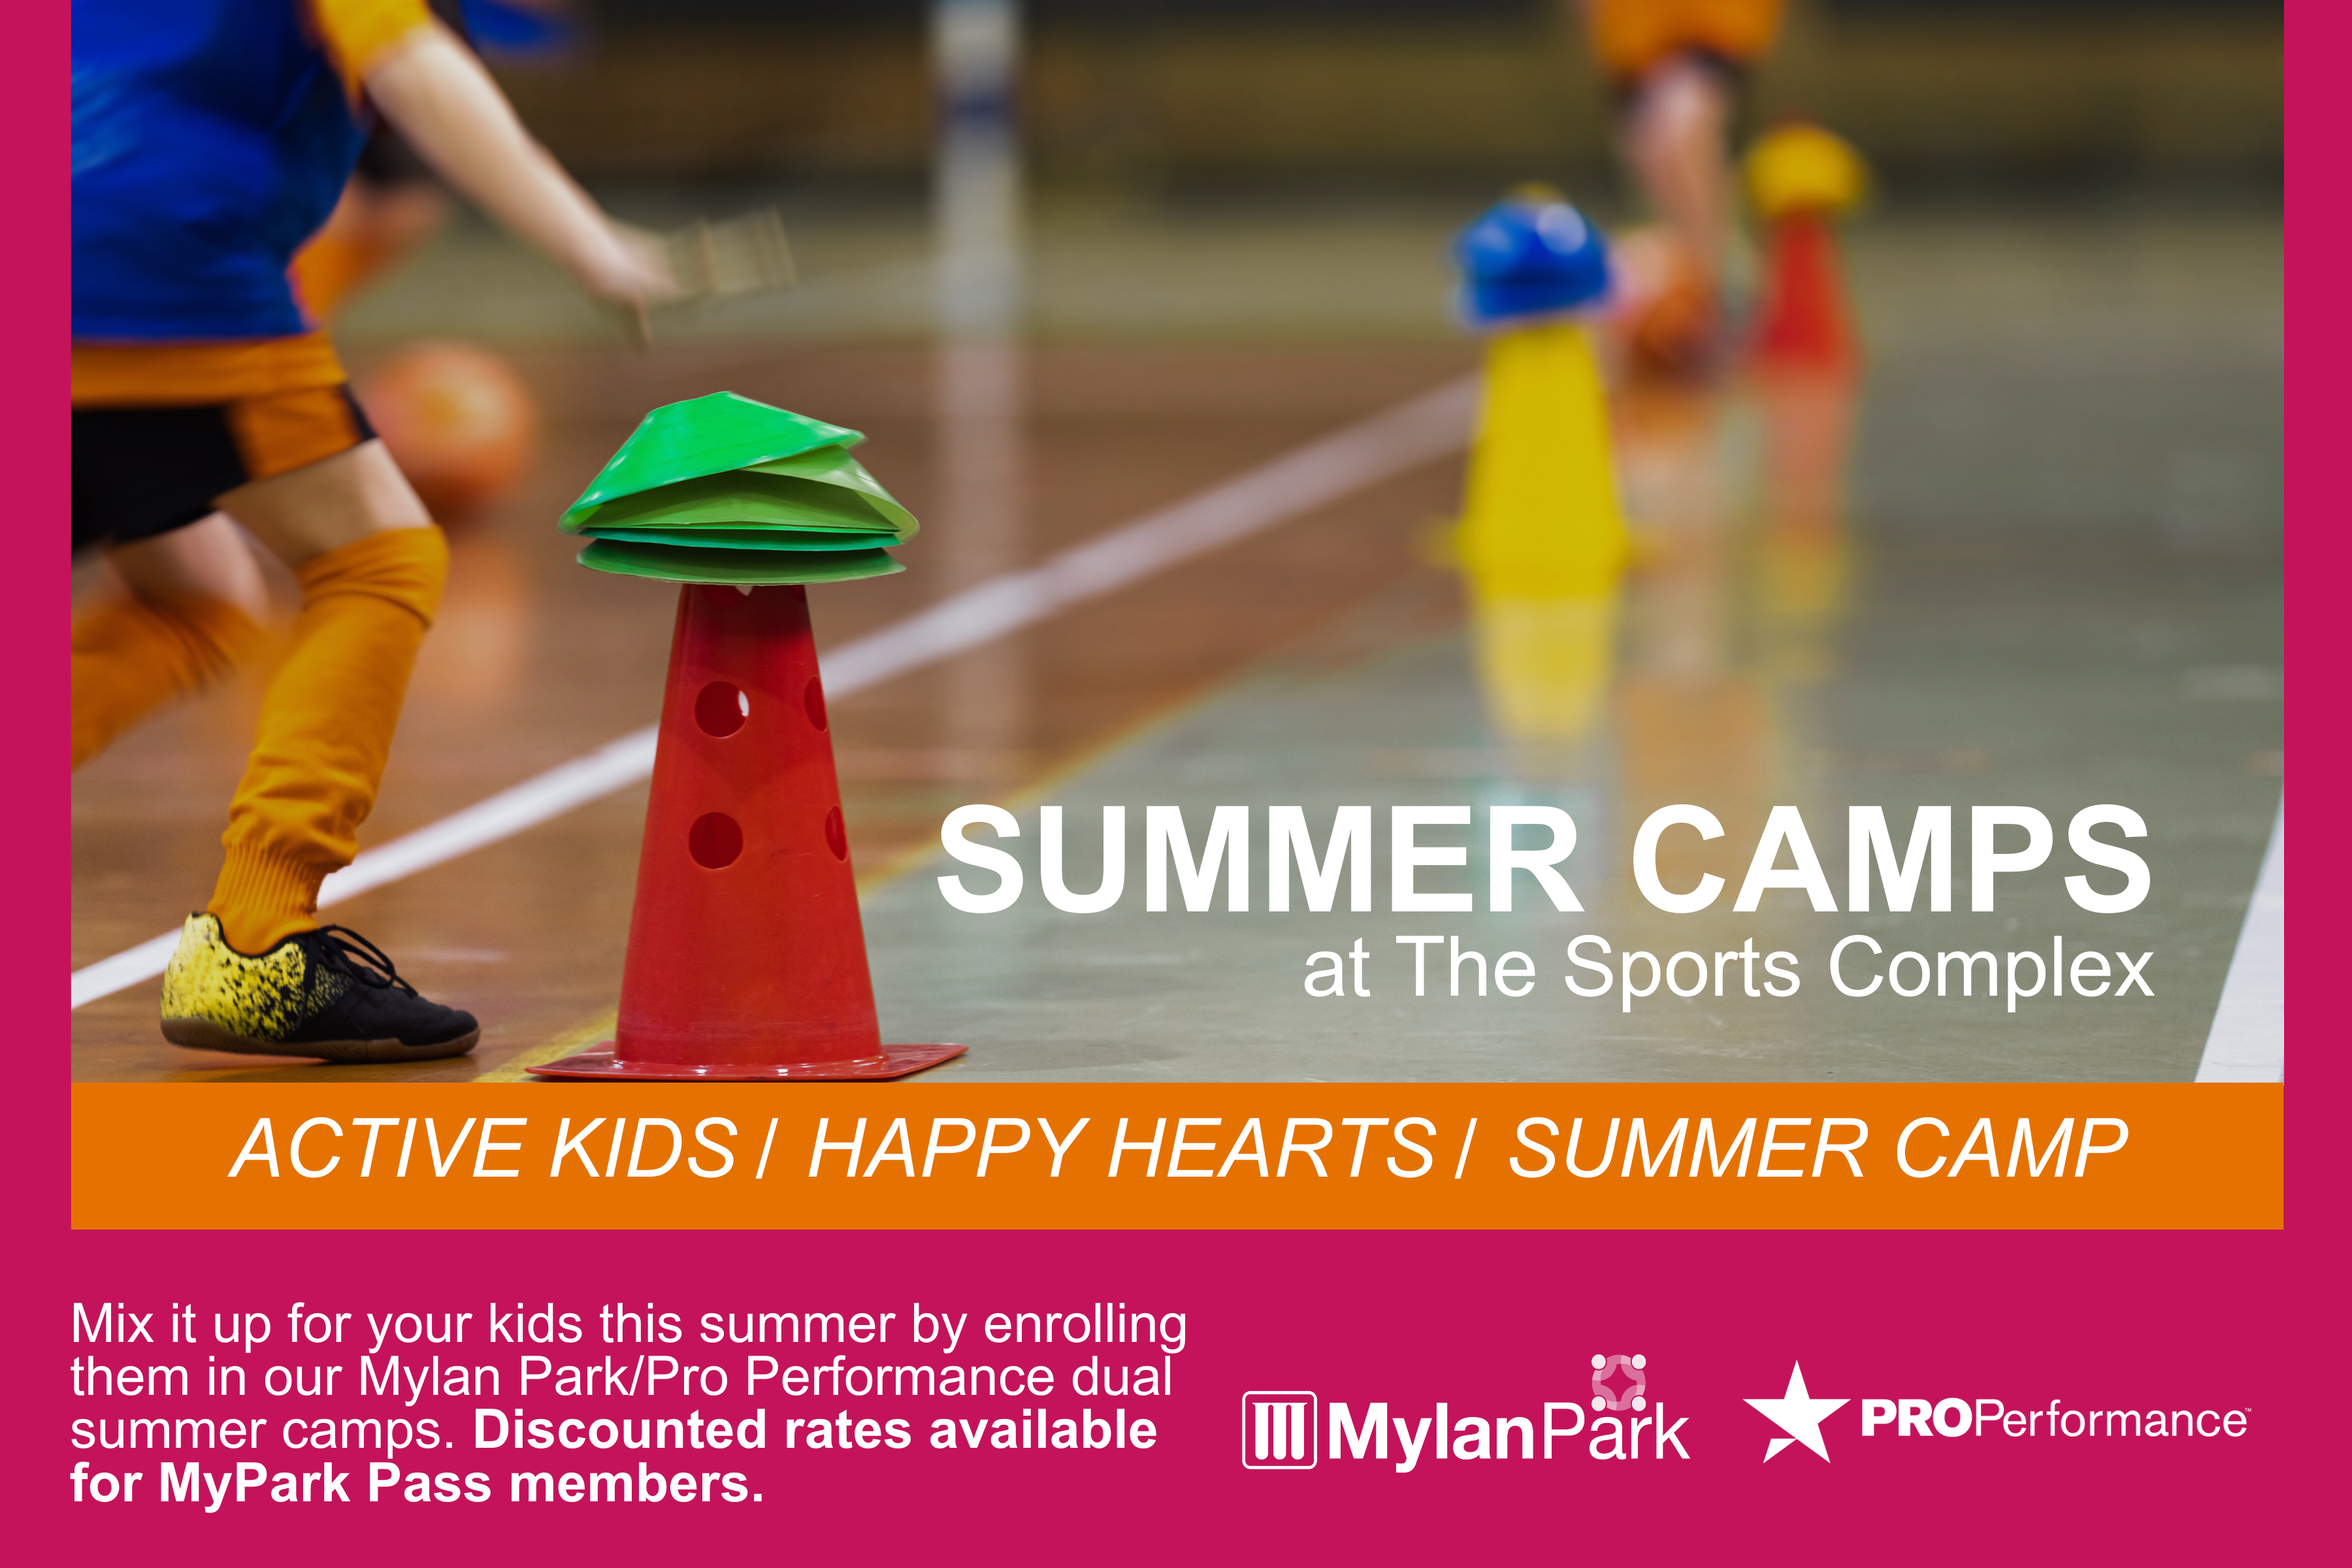 Summer Sports Camp Program for Children